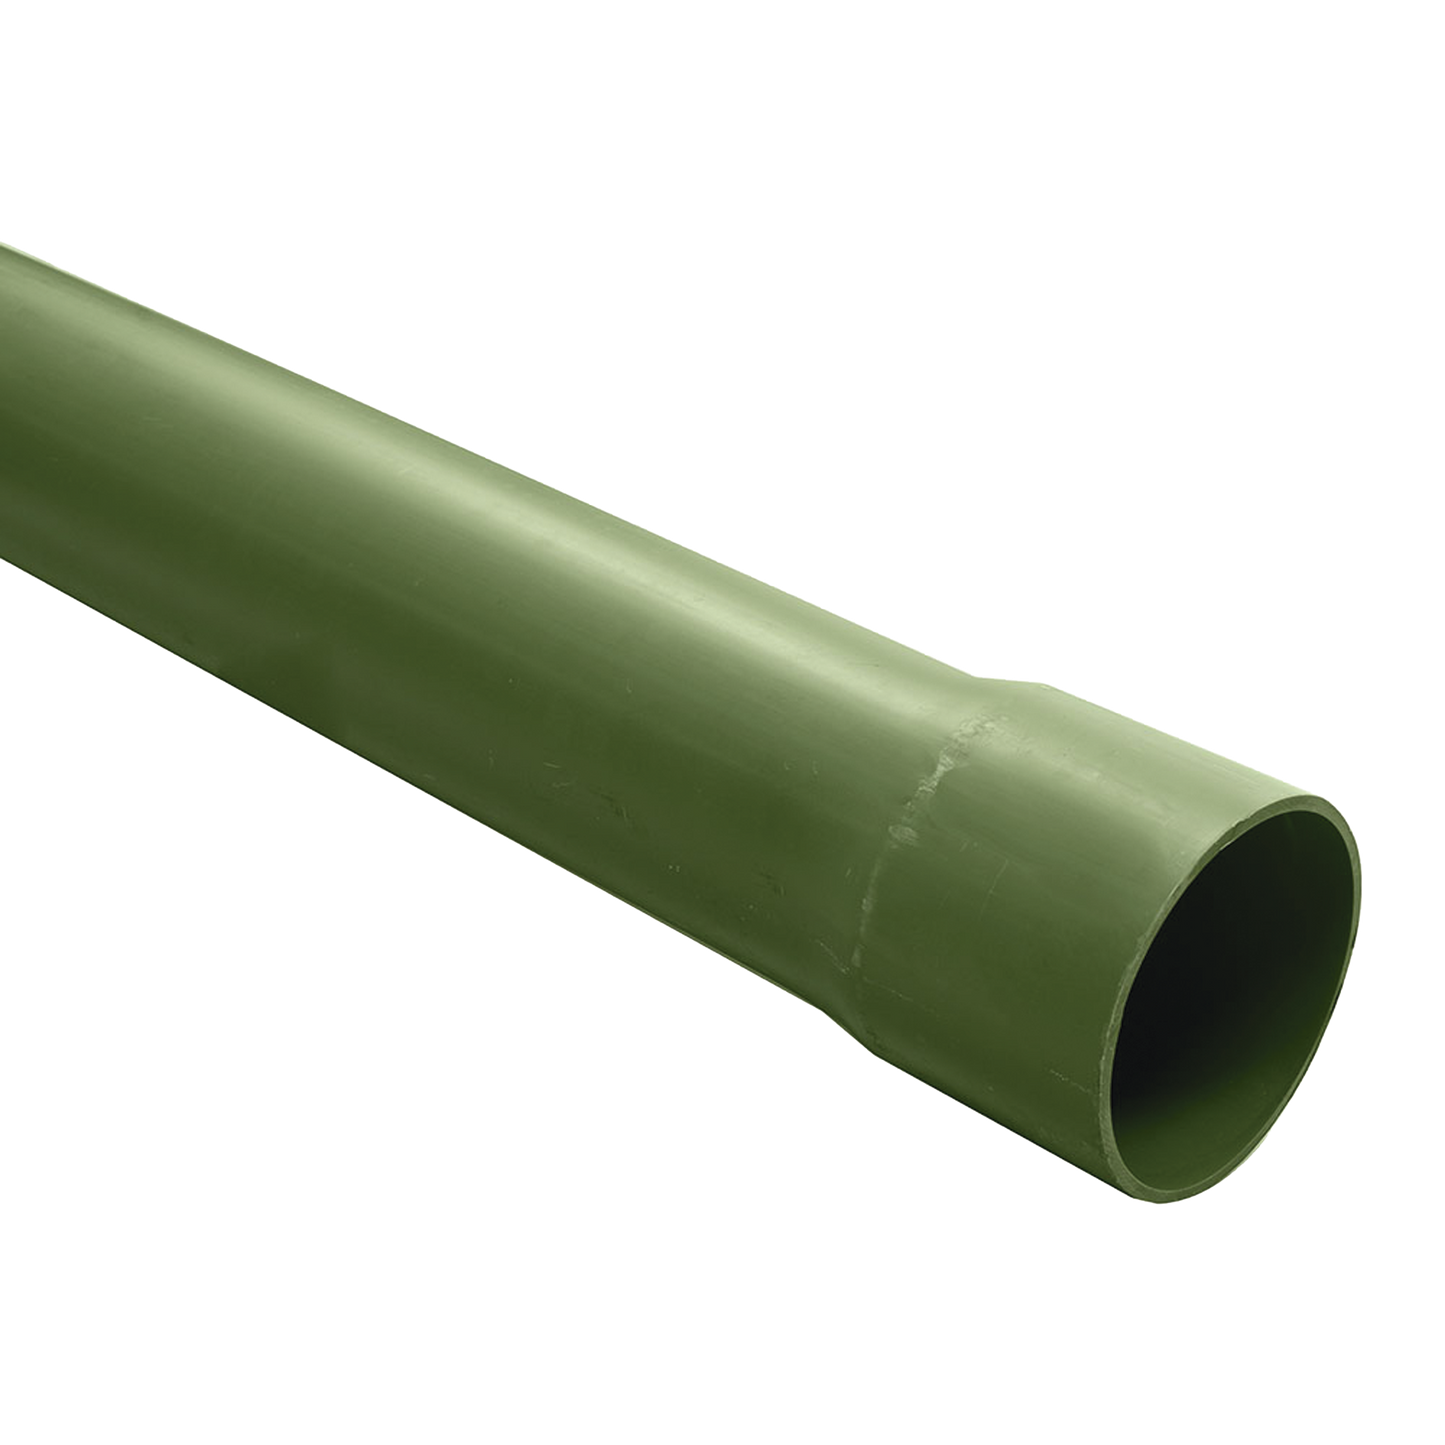 Tubo PVC Conduit pesado de 2" (51 mm)  de 3 m.